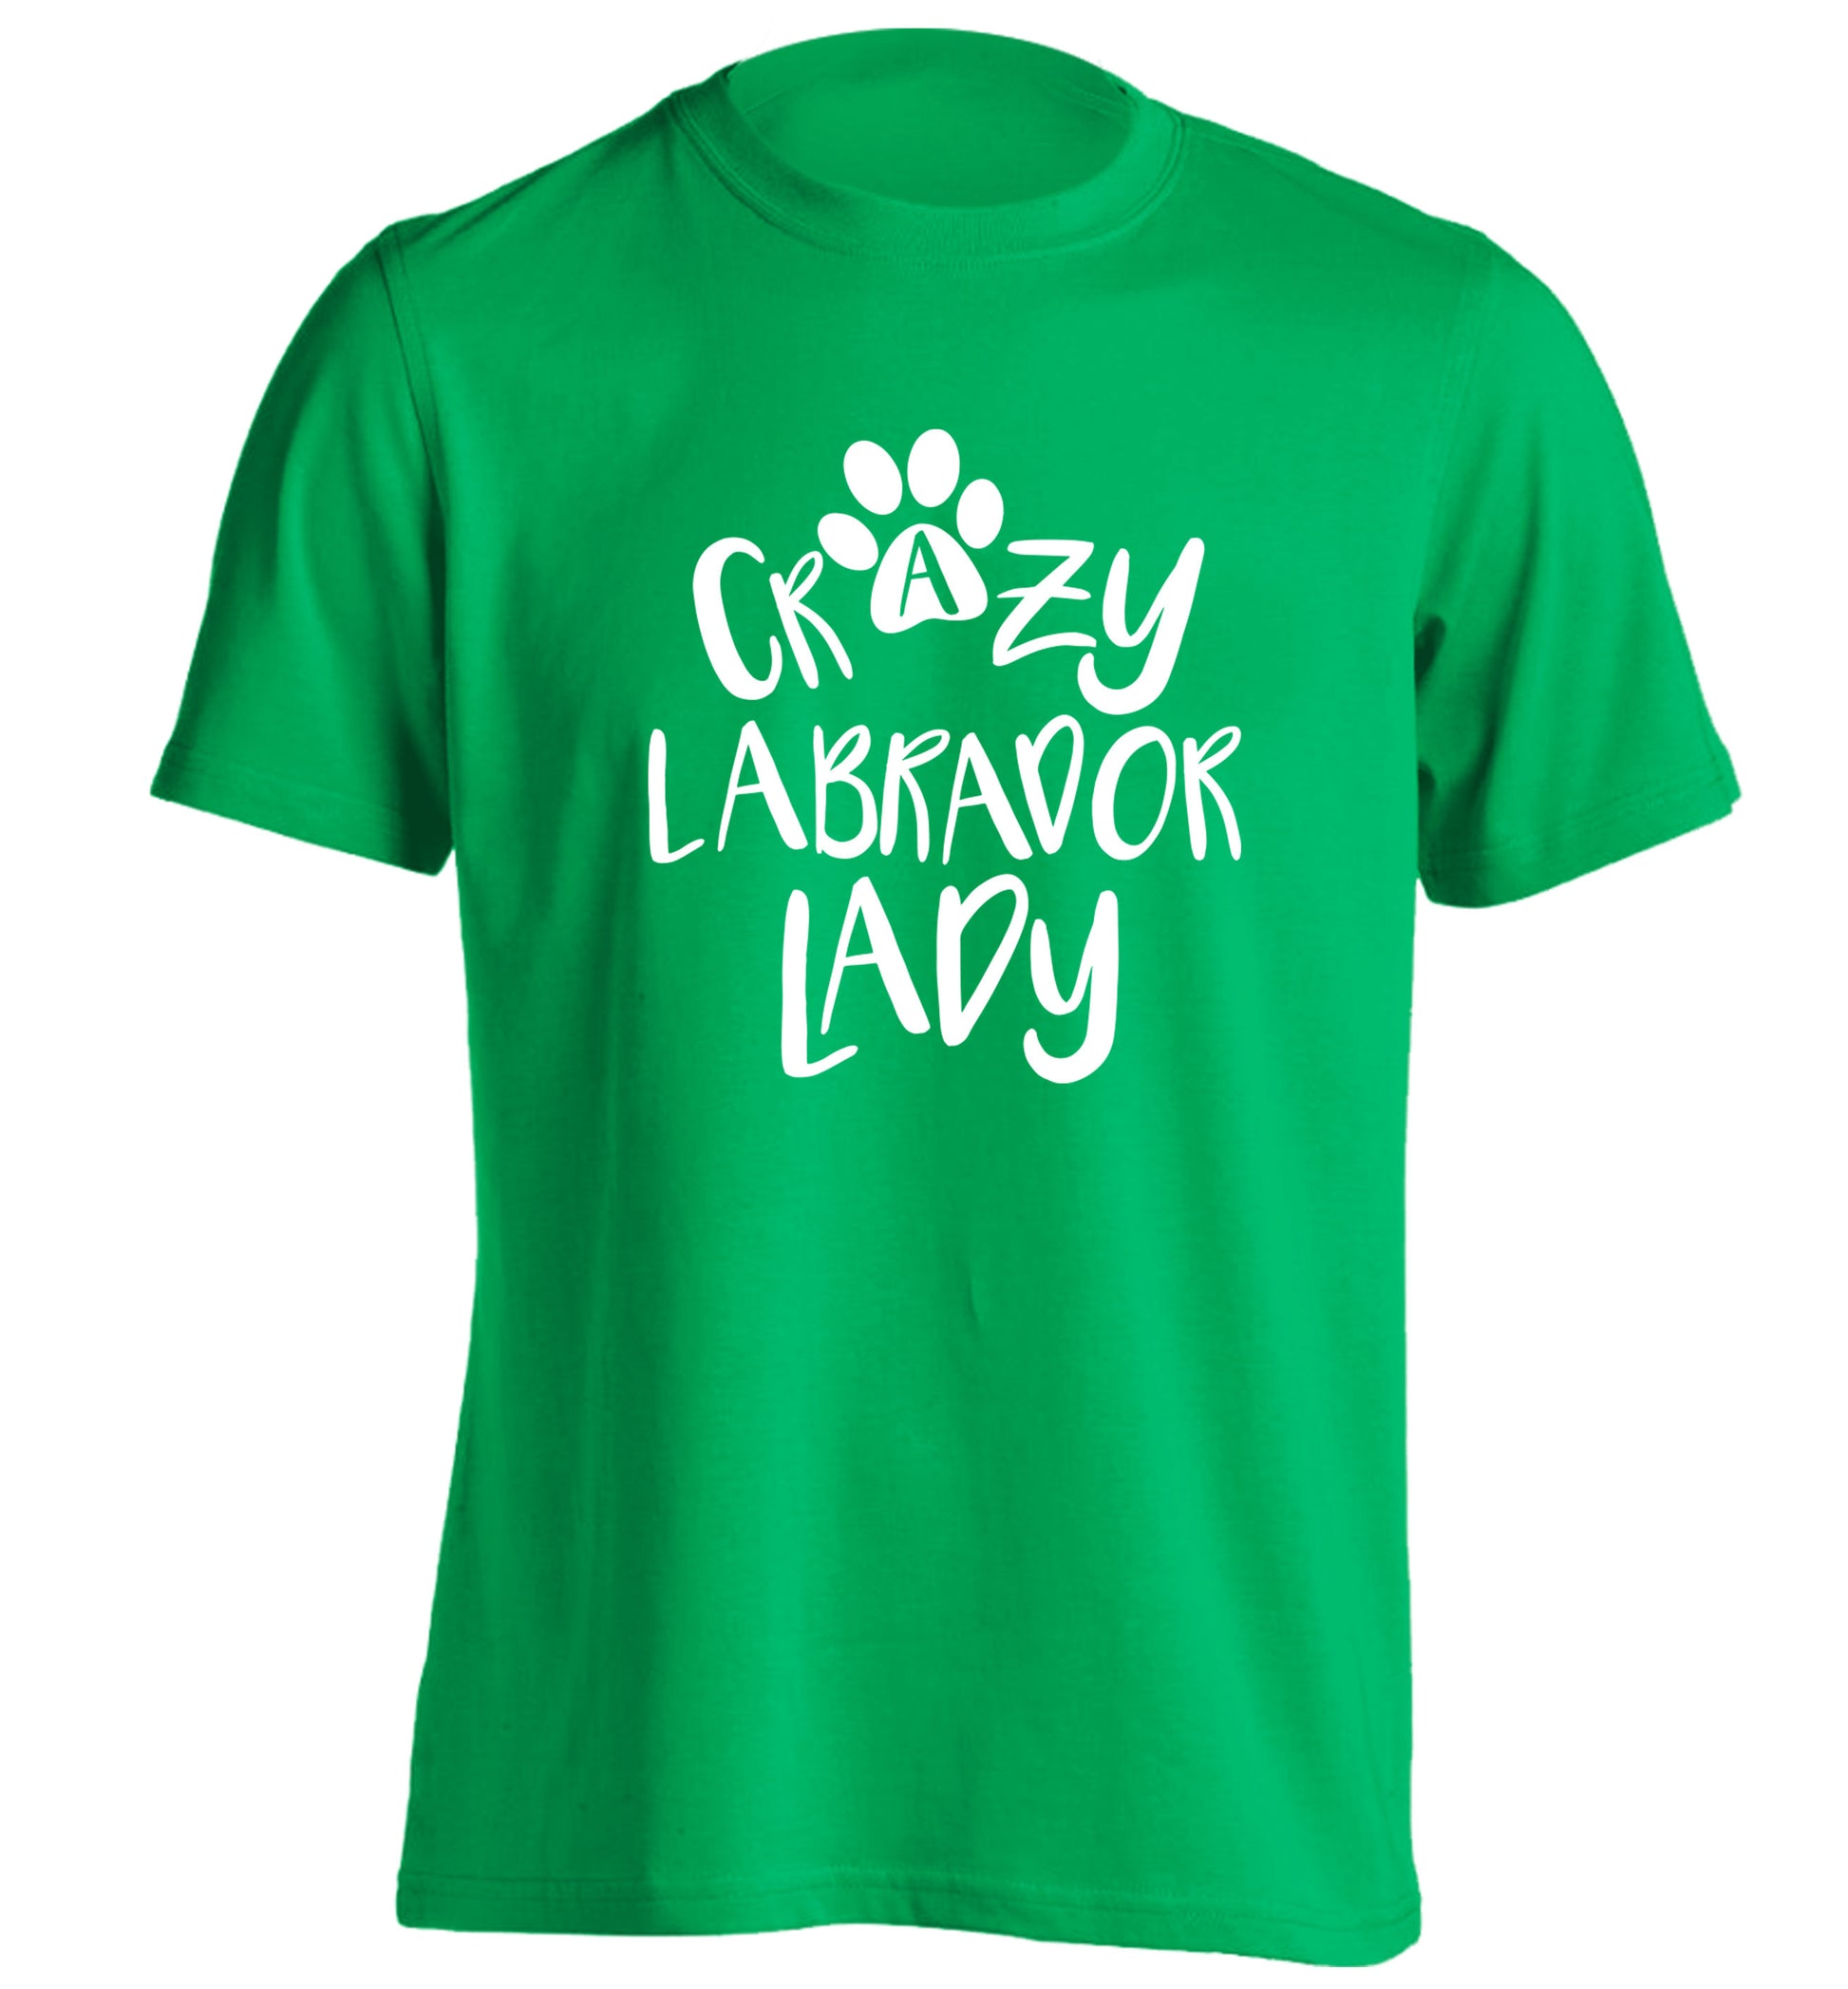 Crazy labrador lady adults unisex green Tshirt 2XL